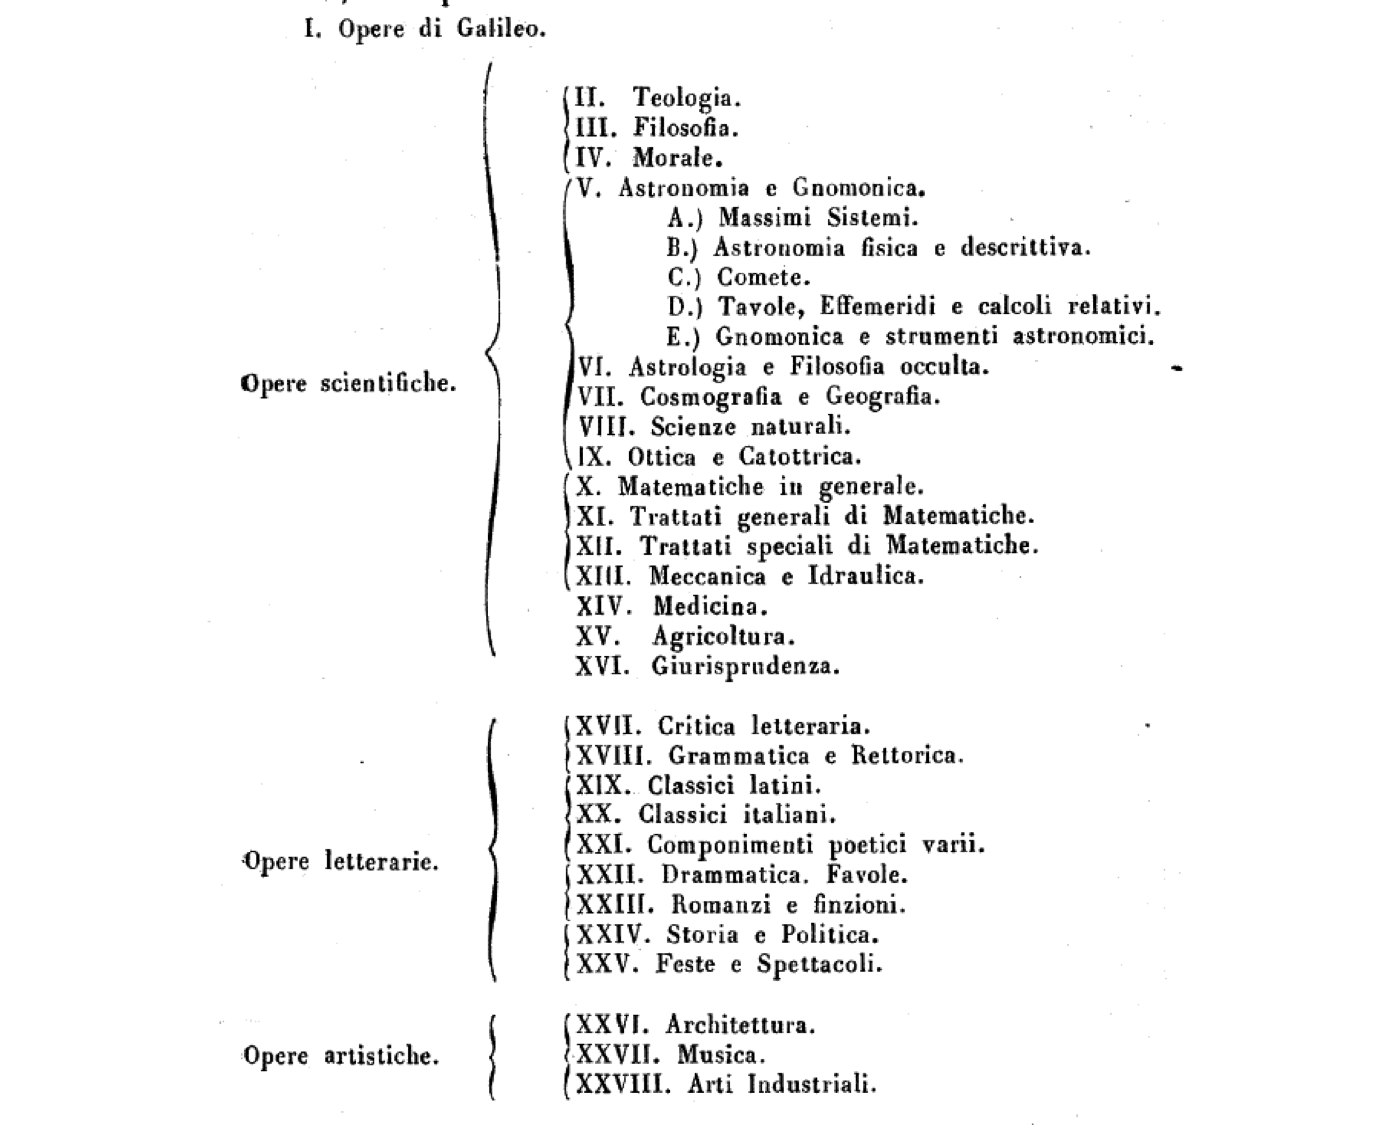 Antonio Favaro's organizational schema for the books in Galileo's library (1884).